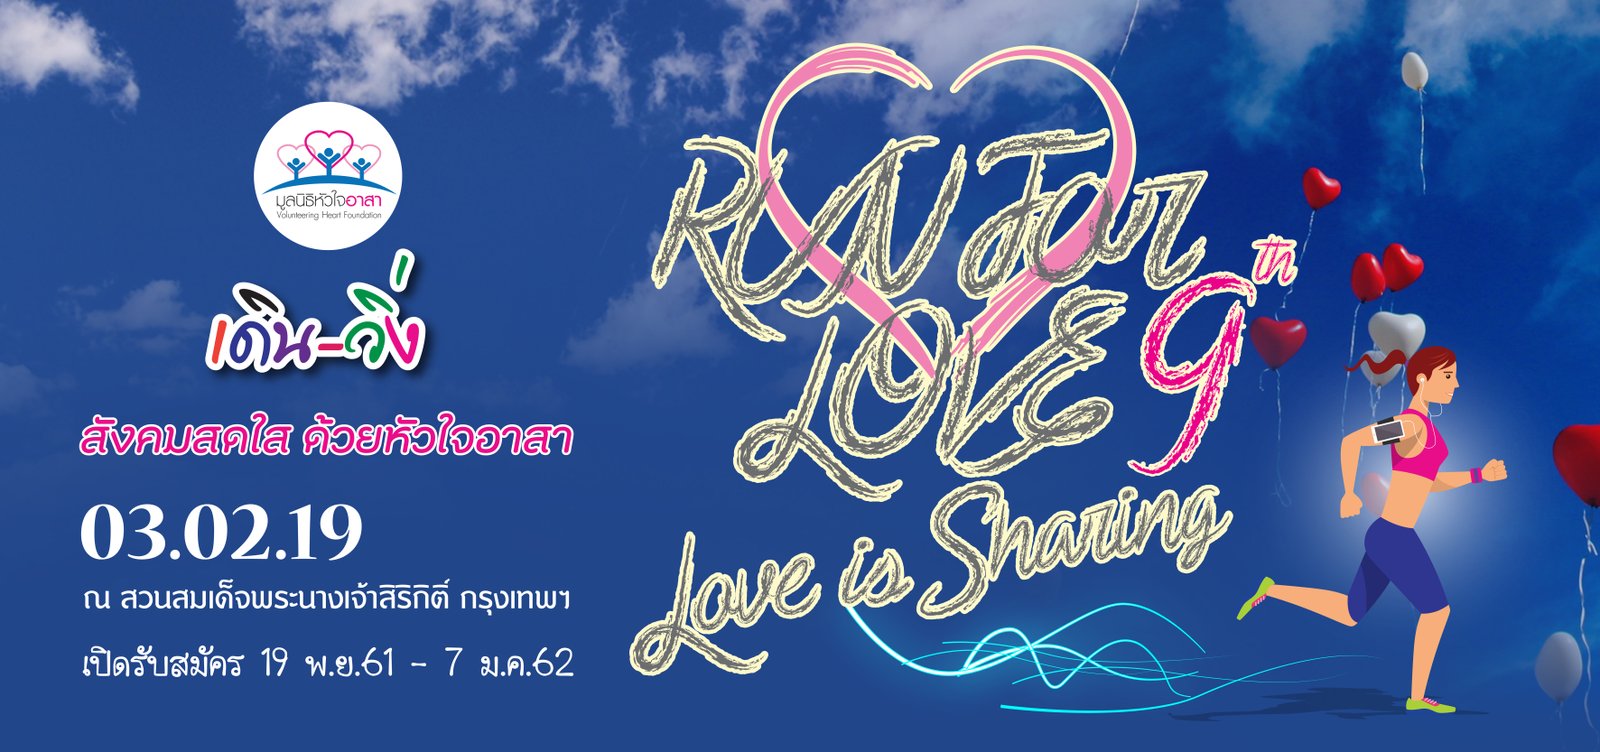 Run for Love 9th  Love is Sharing เดิน-วิ่ง สังคมสดใสด้วยด้วยใจอาสา ครั้งที่ 9